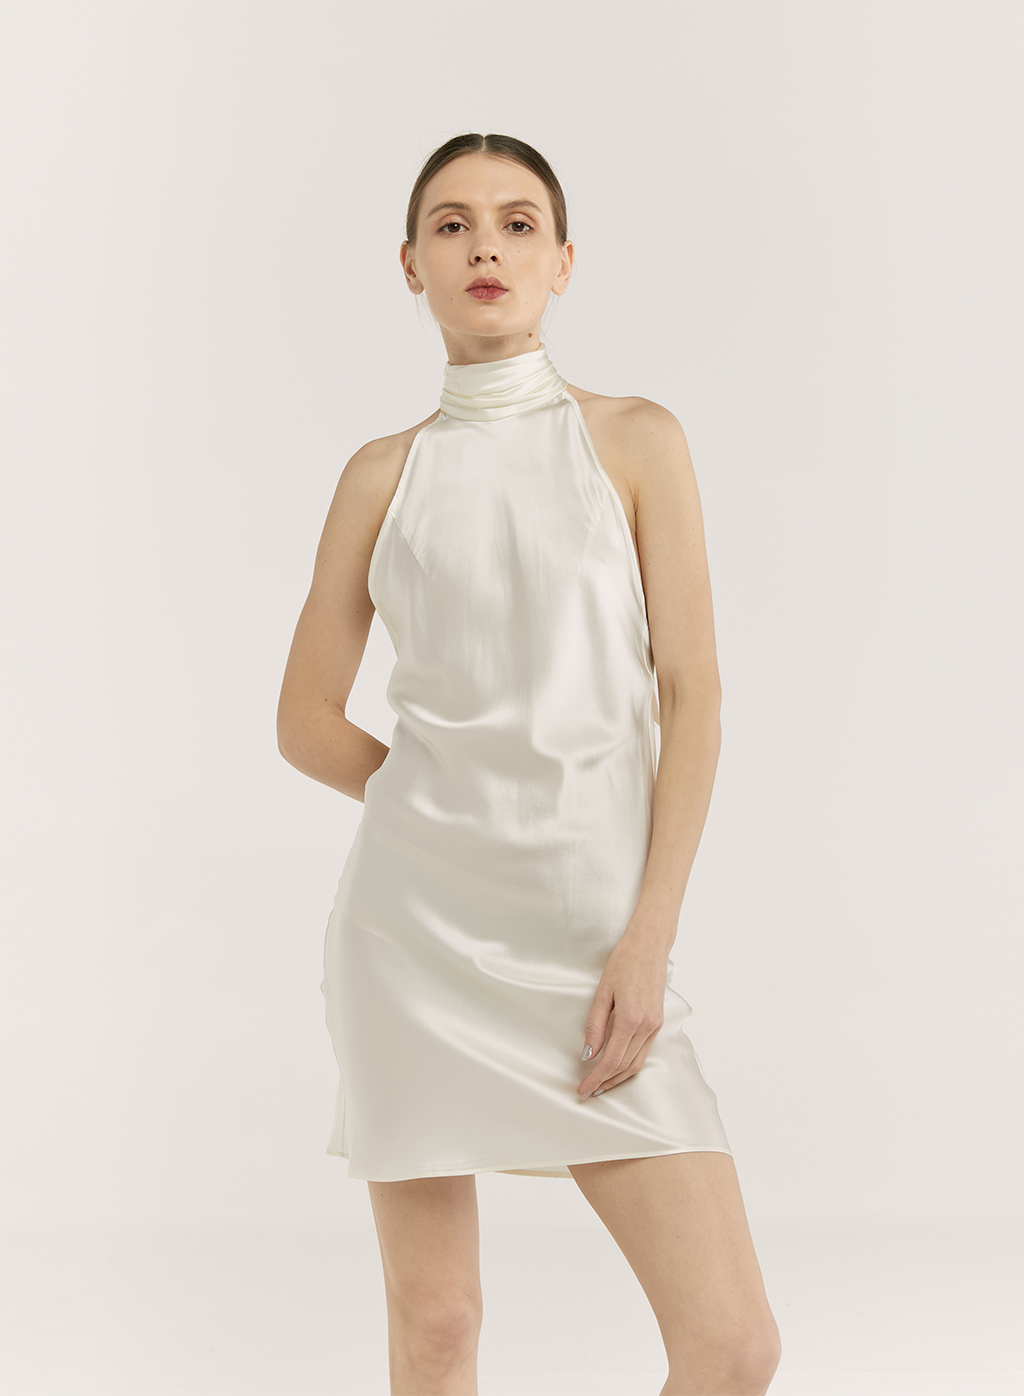 https://appapi.naploungewear.com/wp-content/uploads/2022/05/high-neck-silk-dressmain0.jpg